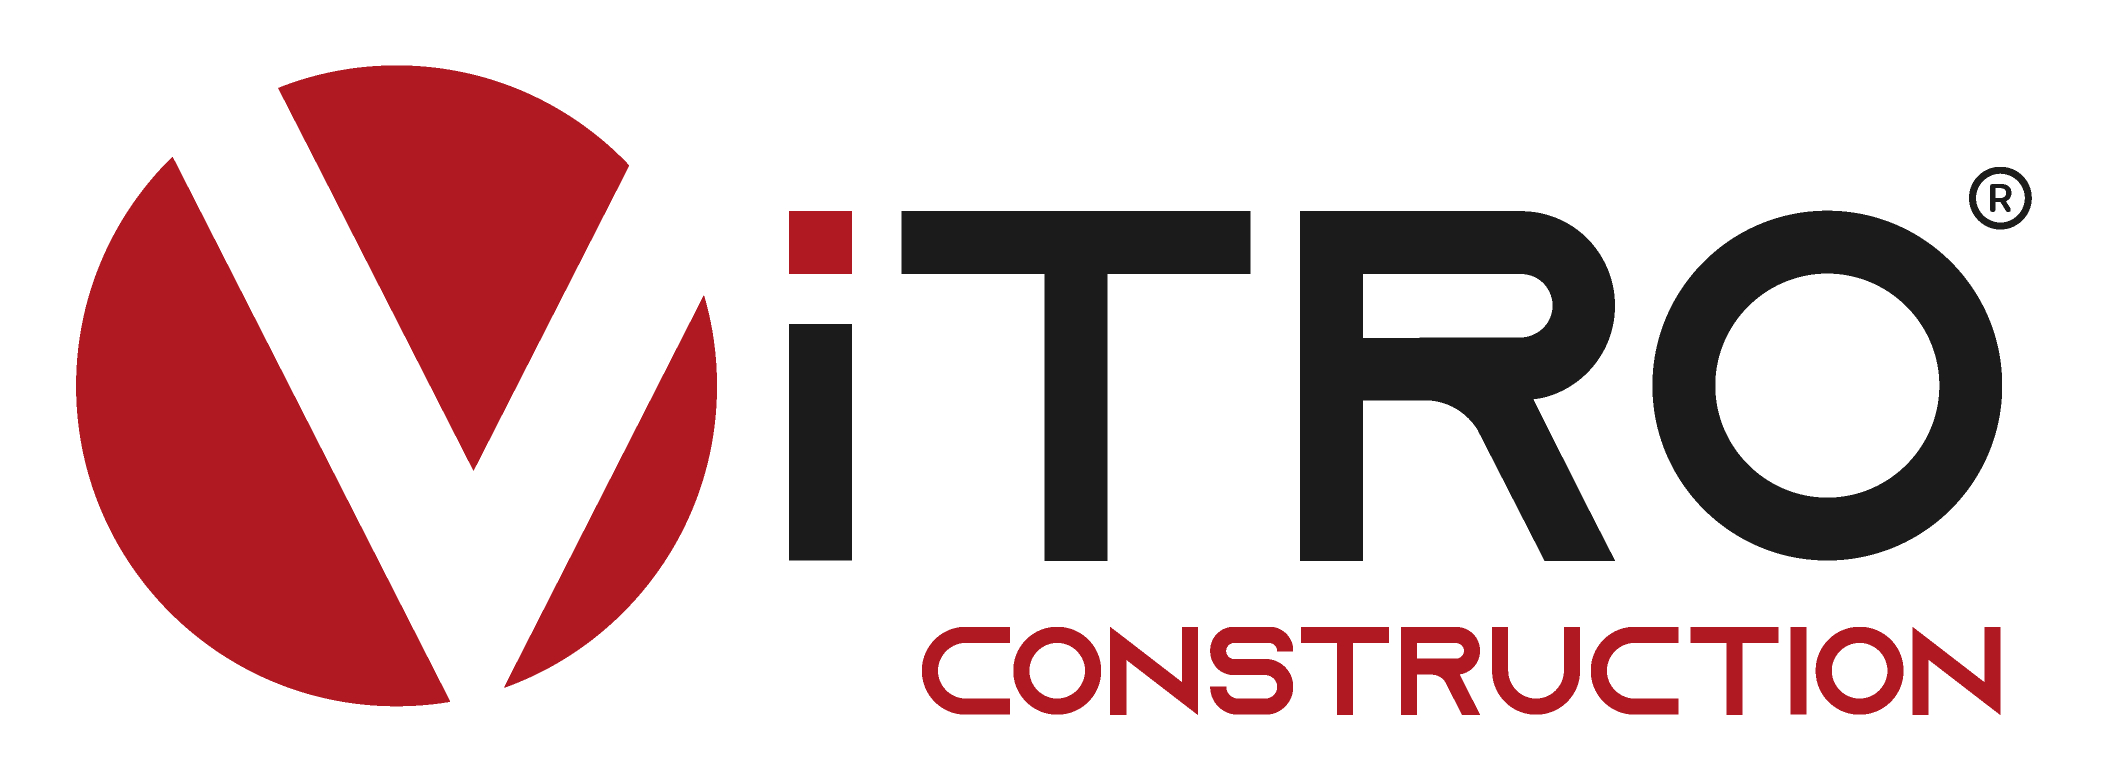 ViTRO Construction s.r.o.